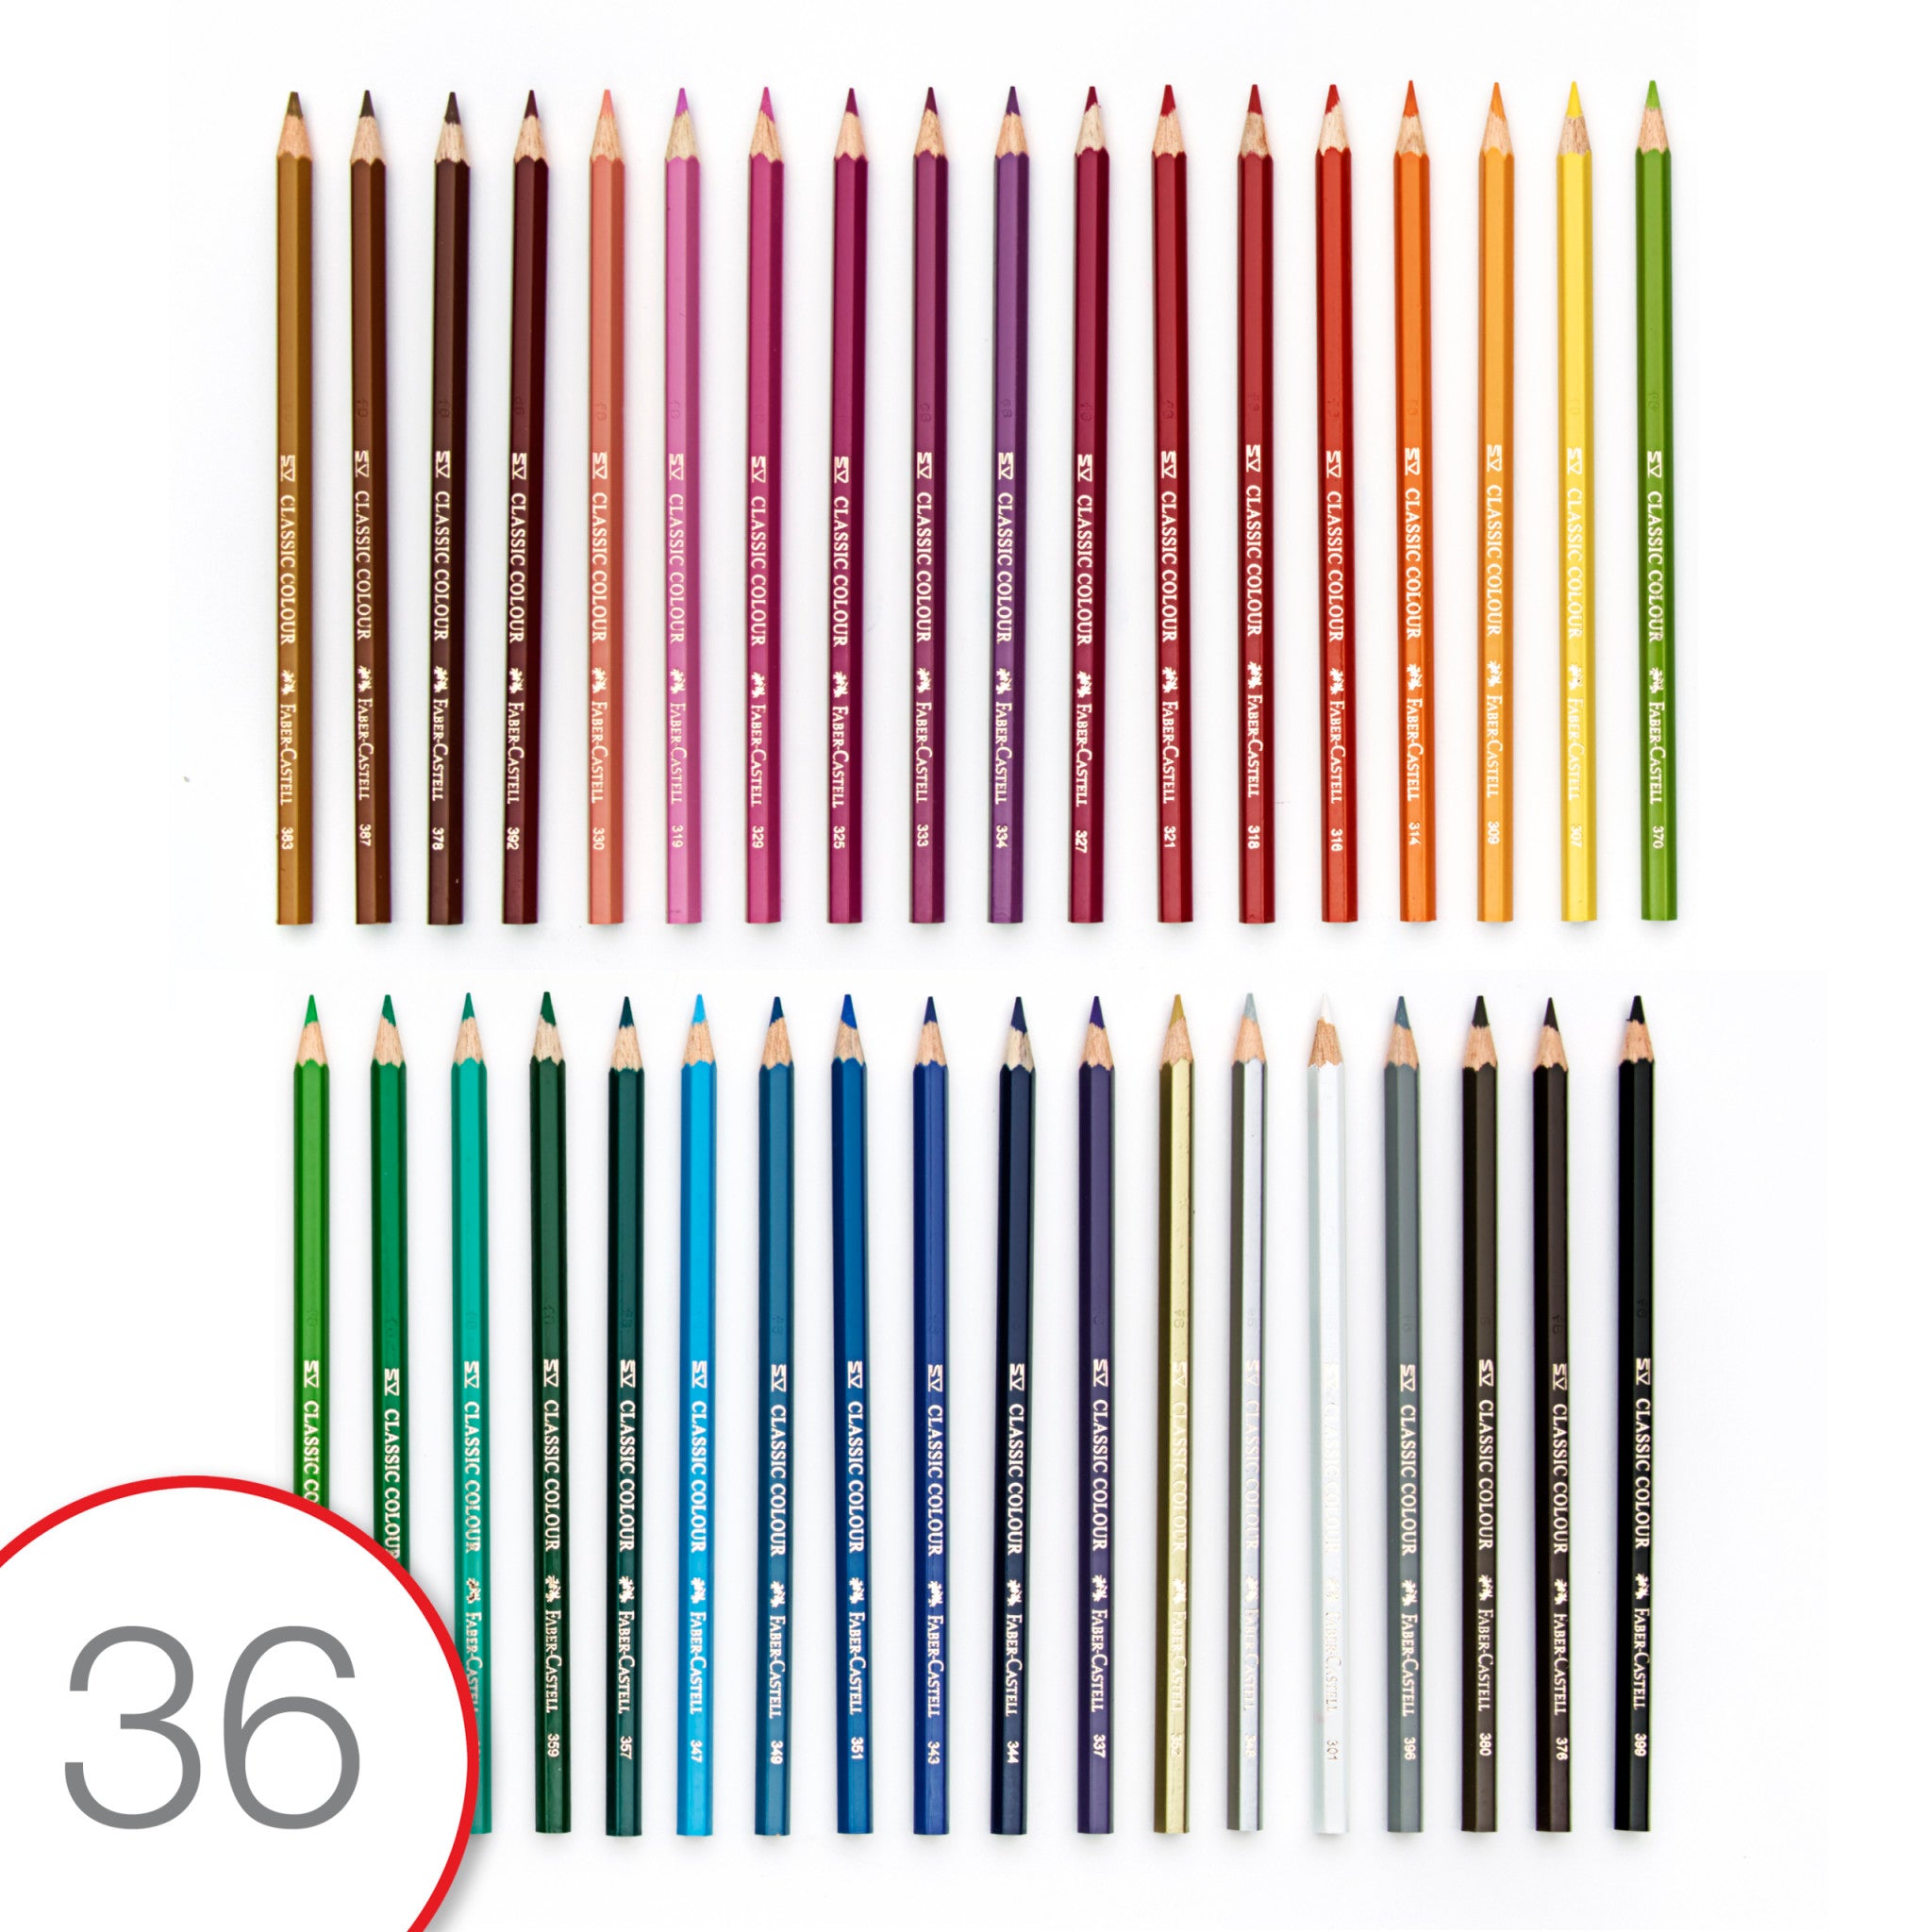 Faber-Castell - 100 Classic Color Pencils Set